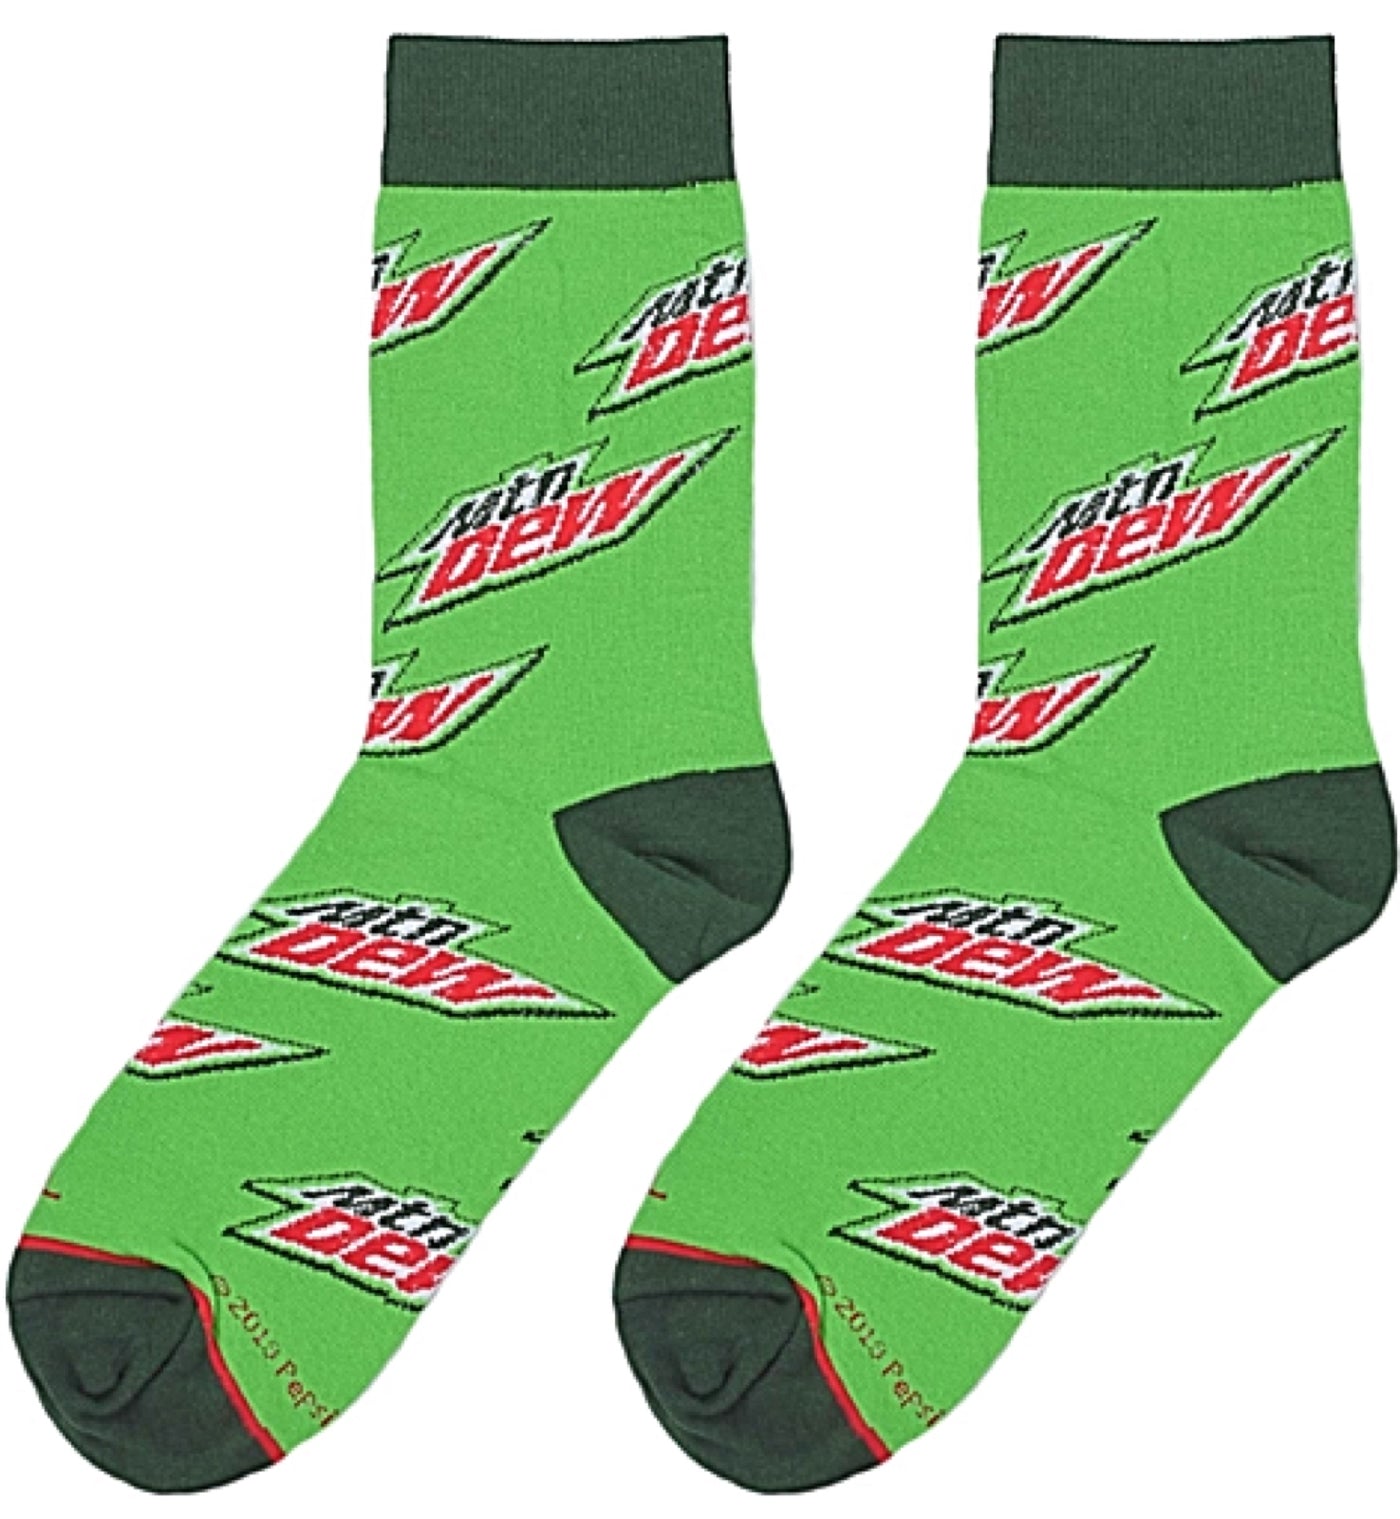 DR. PEPPER Soda Men's Socks COOL SOCKS Brand